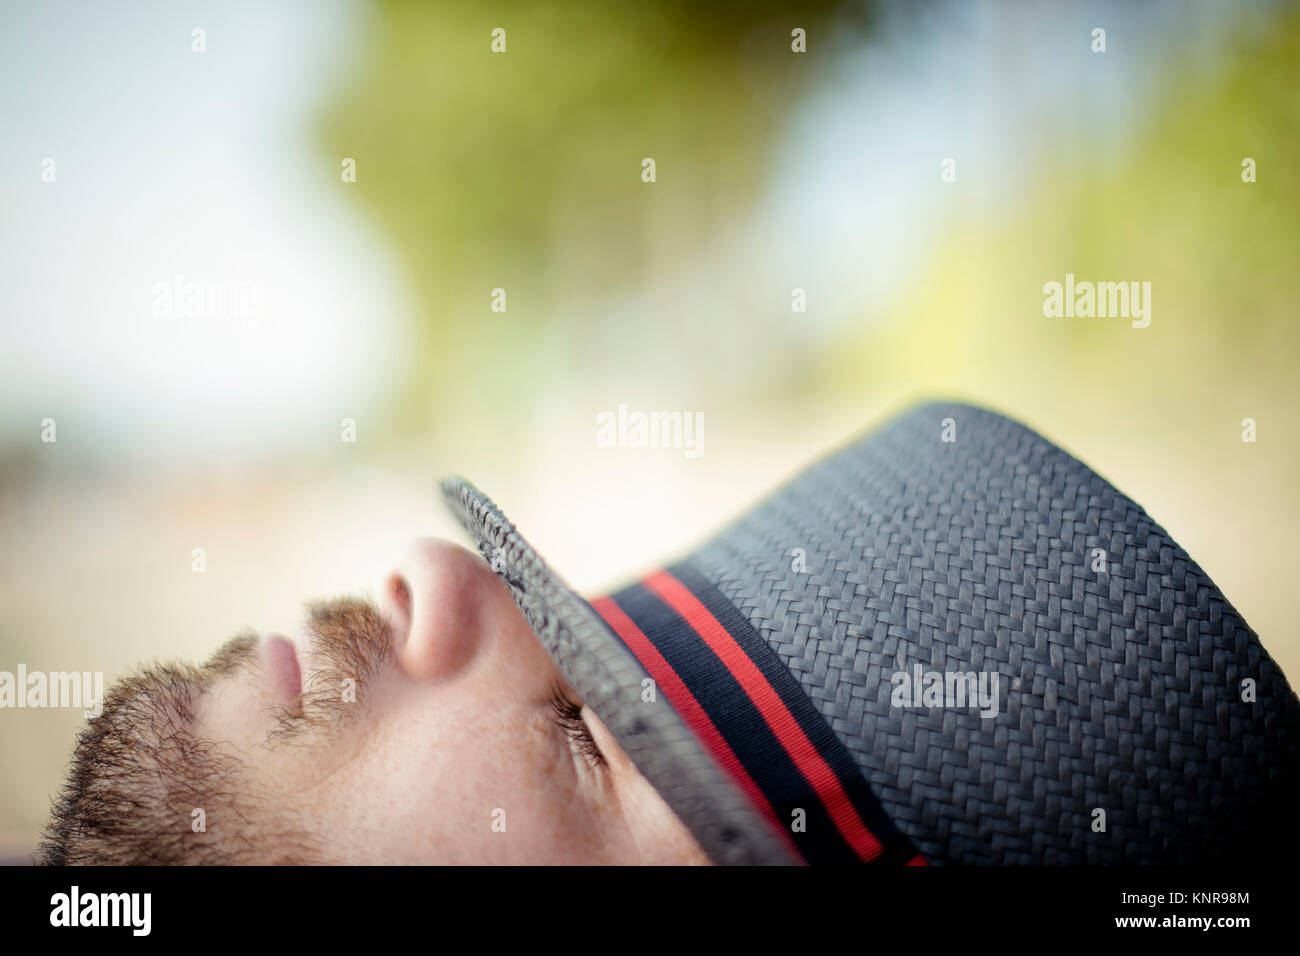 Schlafender Mann Mit Hut - schlafen Mann mit Hut Stockfoto